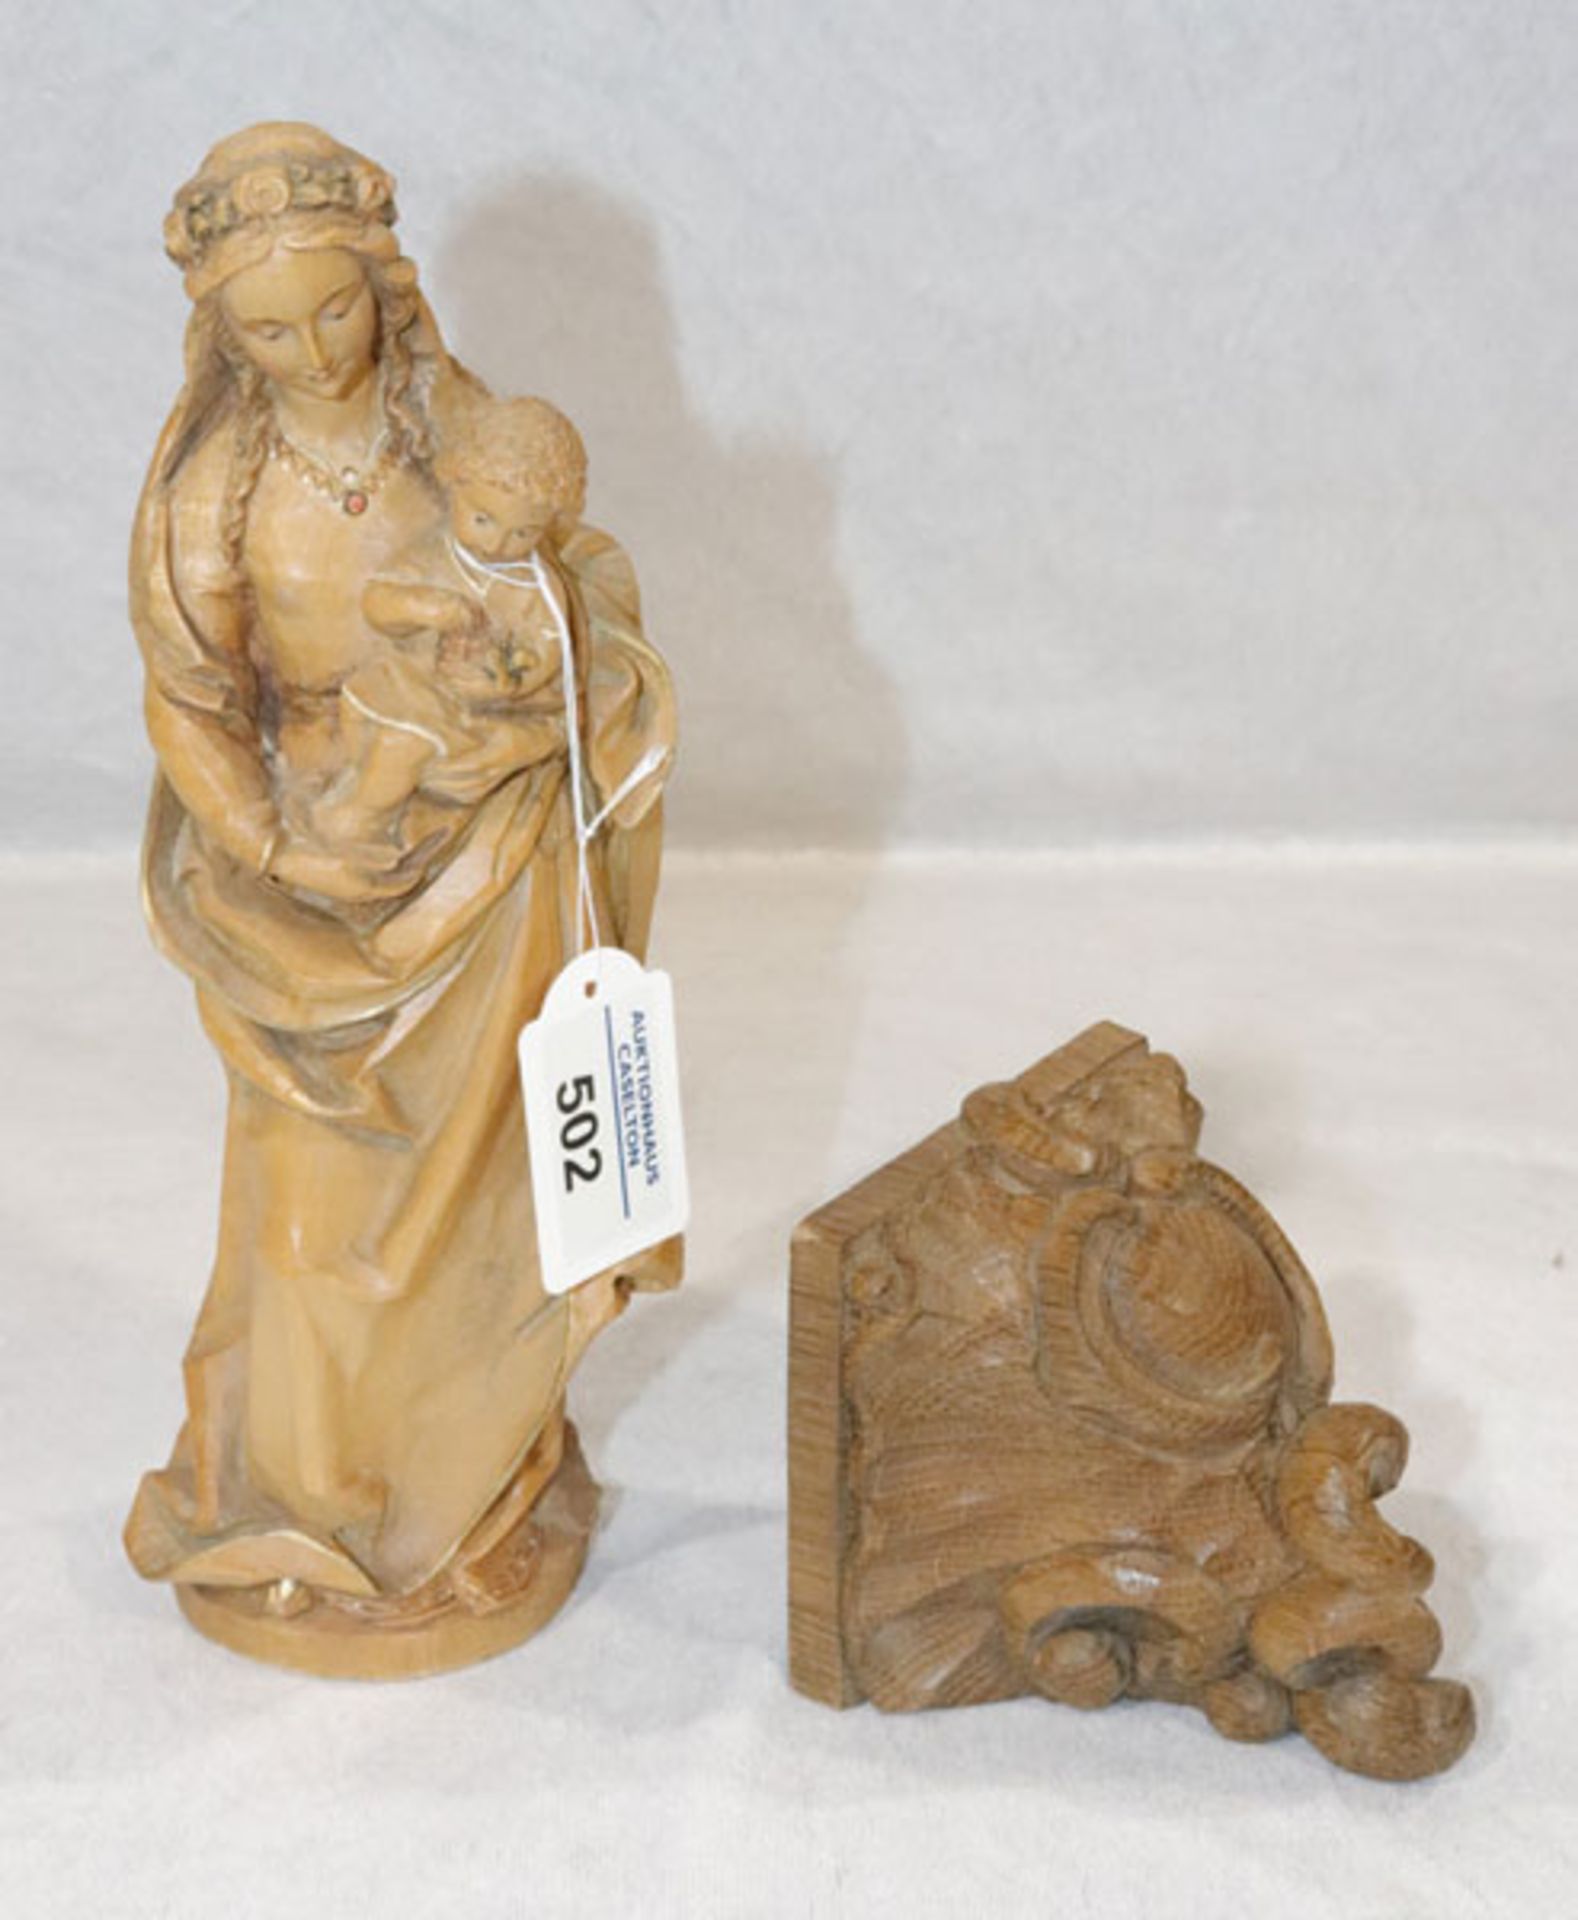 Holz Figurenskulptur 'Maria mit Kind', gebeizt, H 25 cm, B 10 cm, T 8 cm, und Wandsockel, dunkel